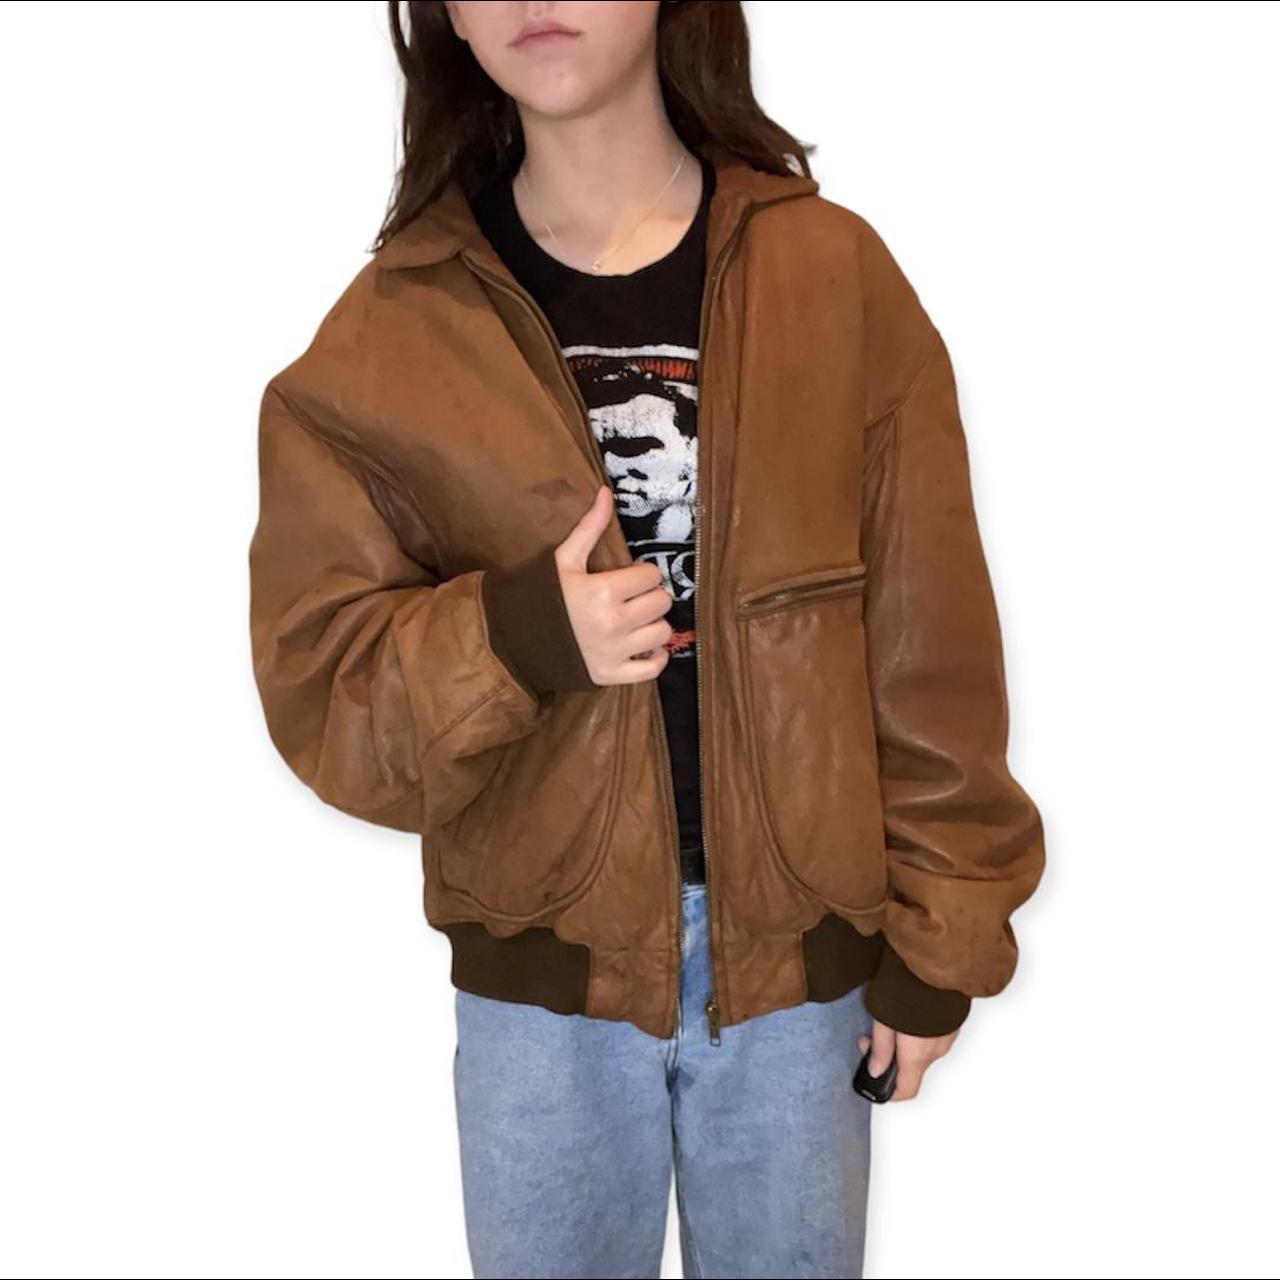 Banana Republic brown leather jacket#N#- gender... - Depop